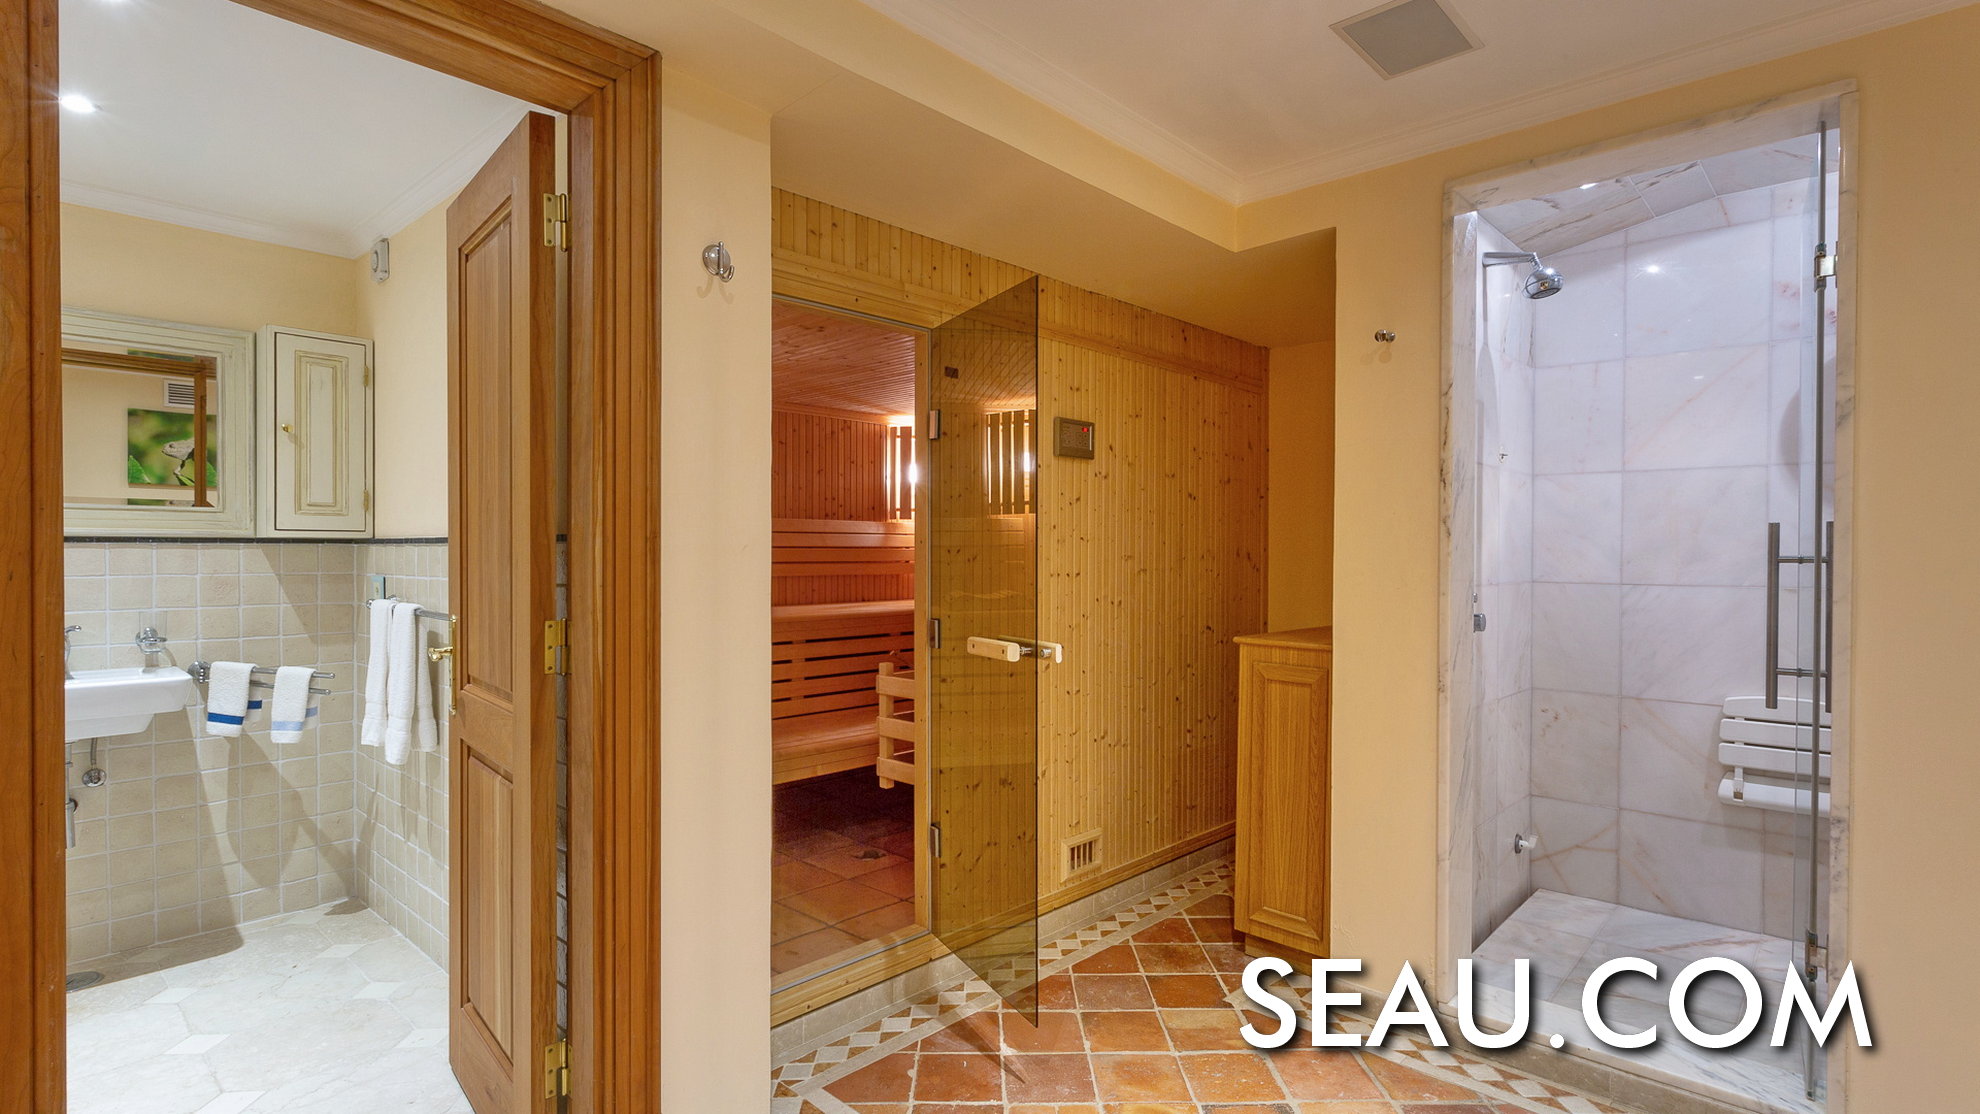 Y un baño y un espacio de spa, con un baño turco y una sala de sauna.